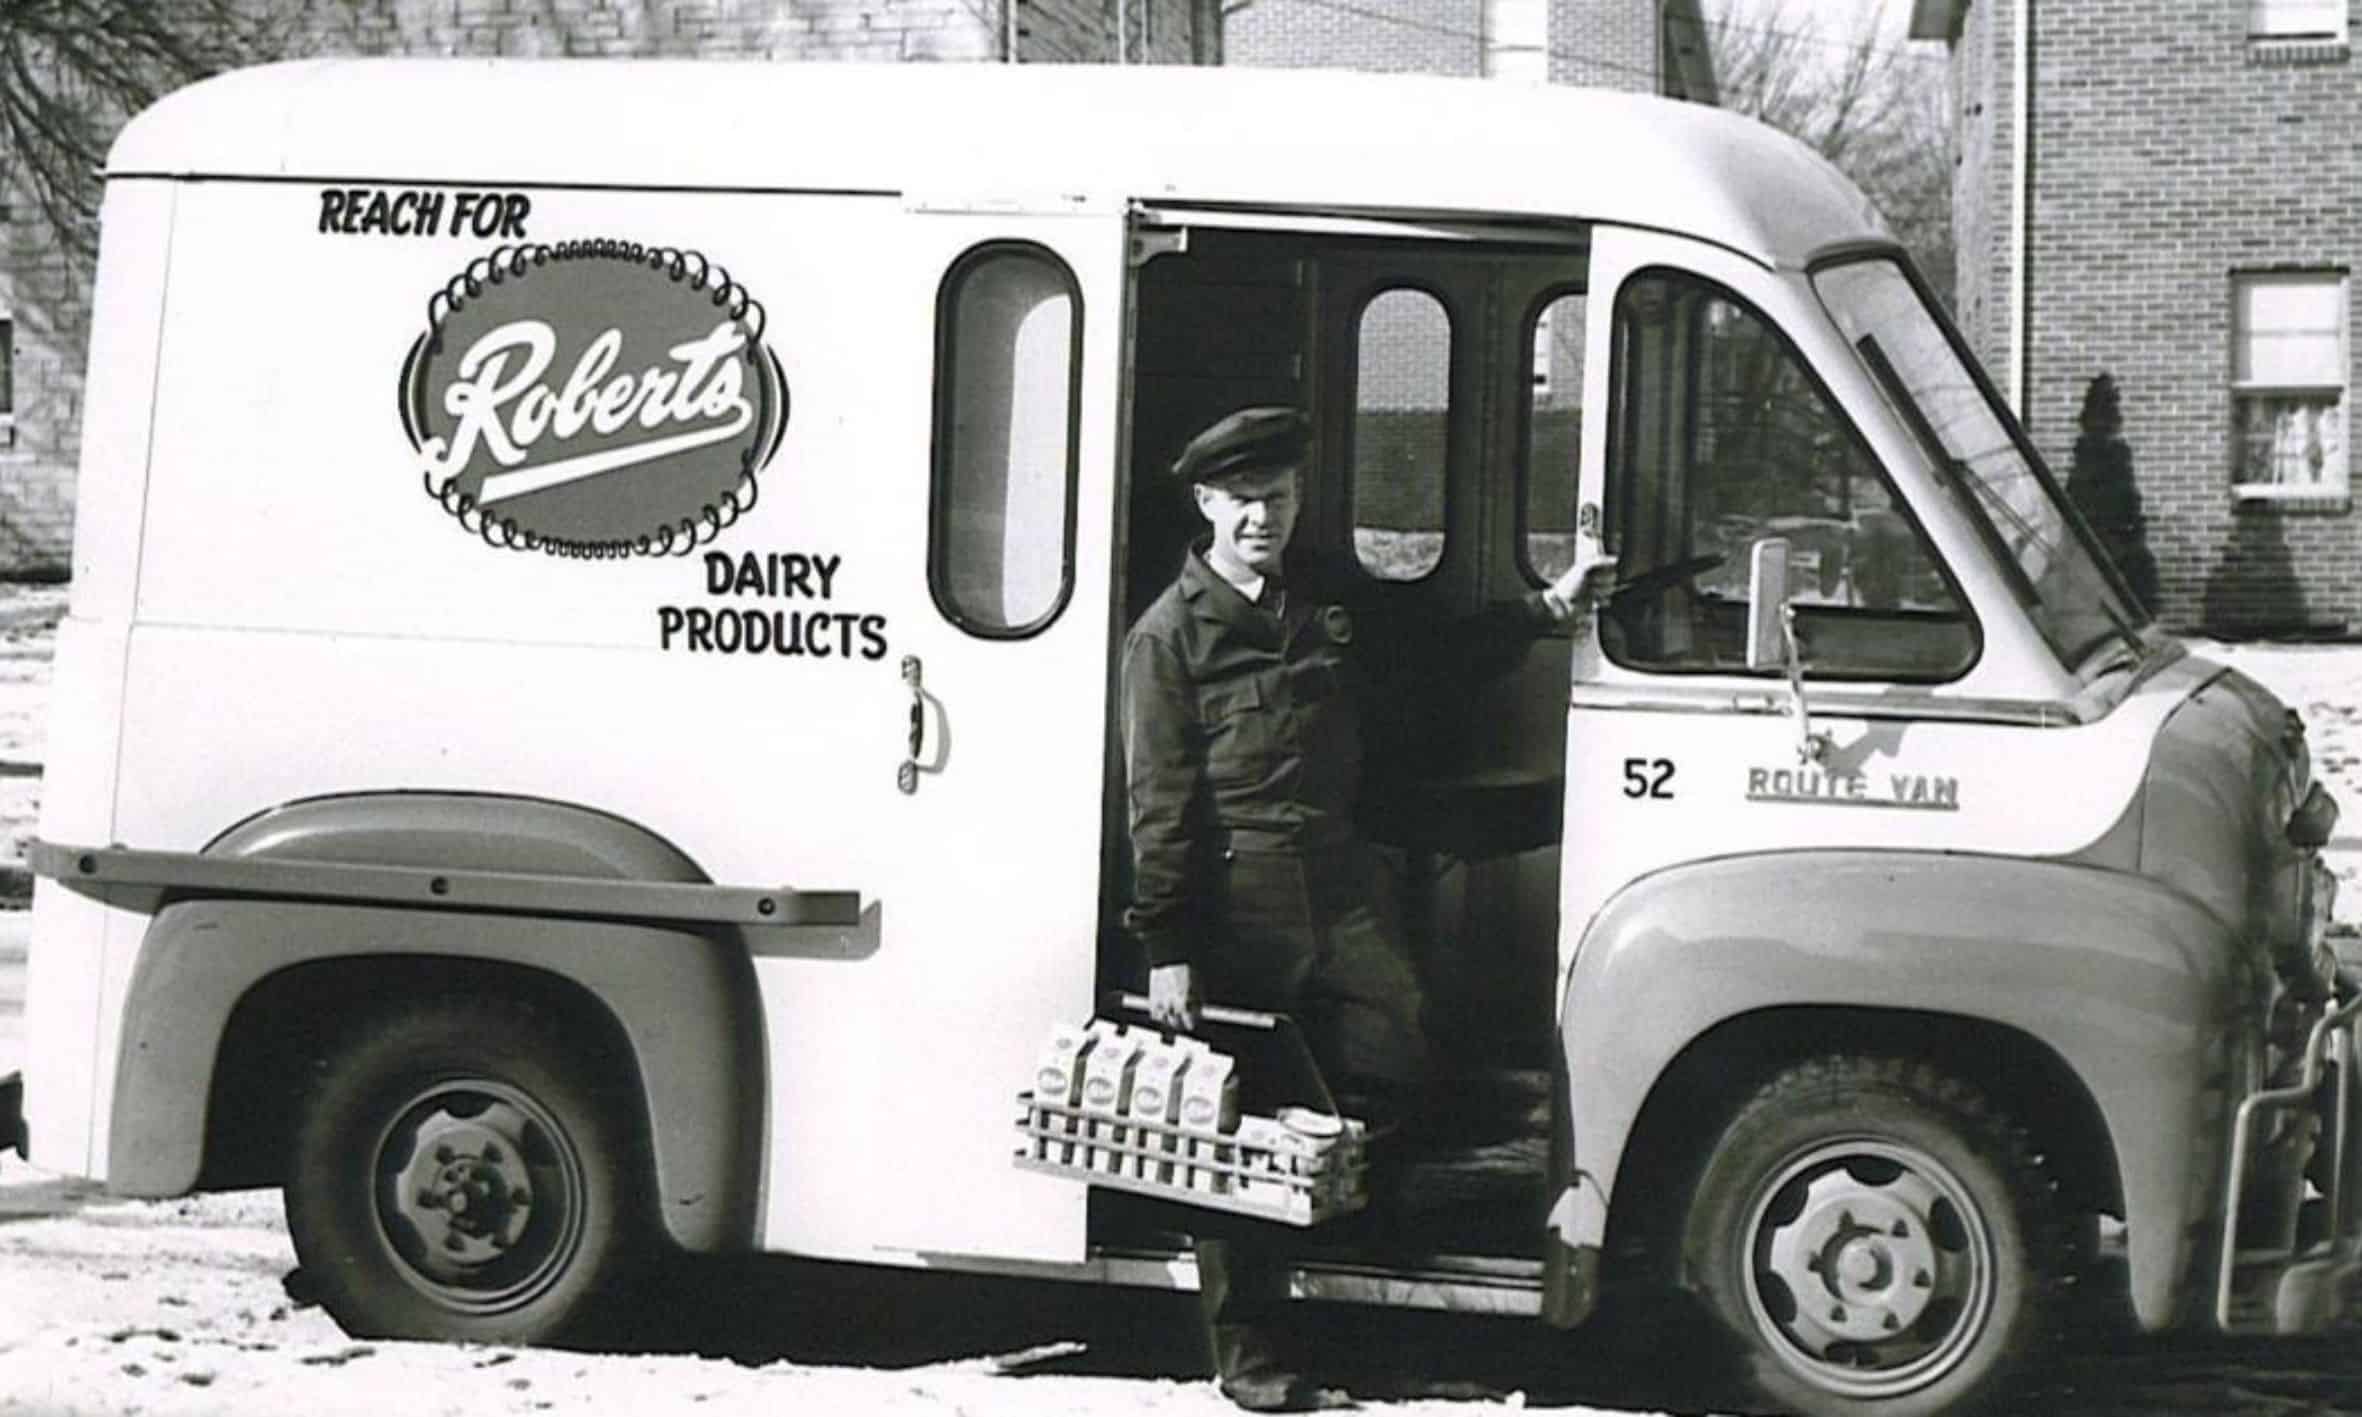 Omaha's milk processing history is legen-dairy